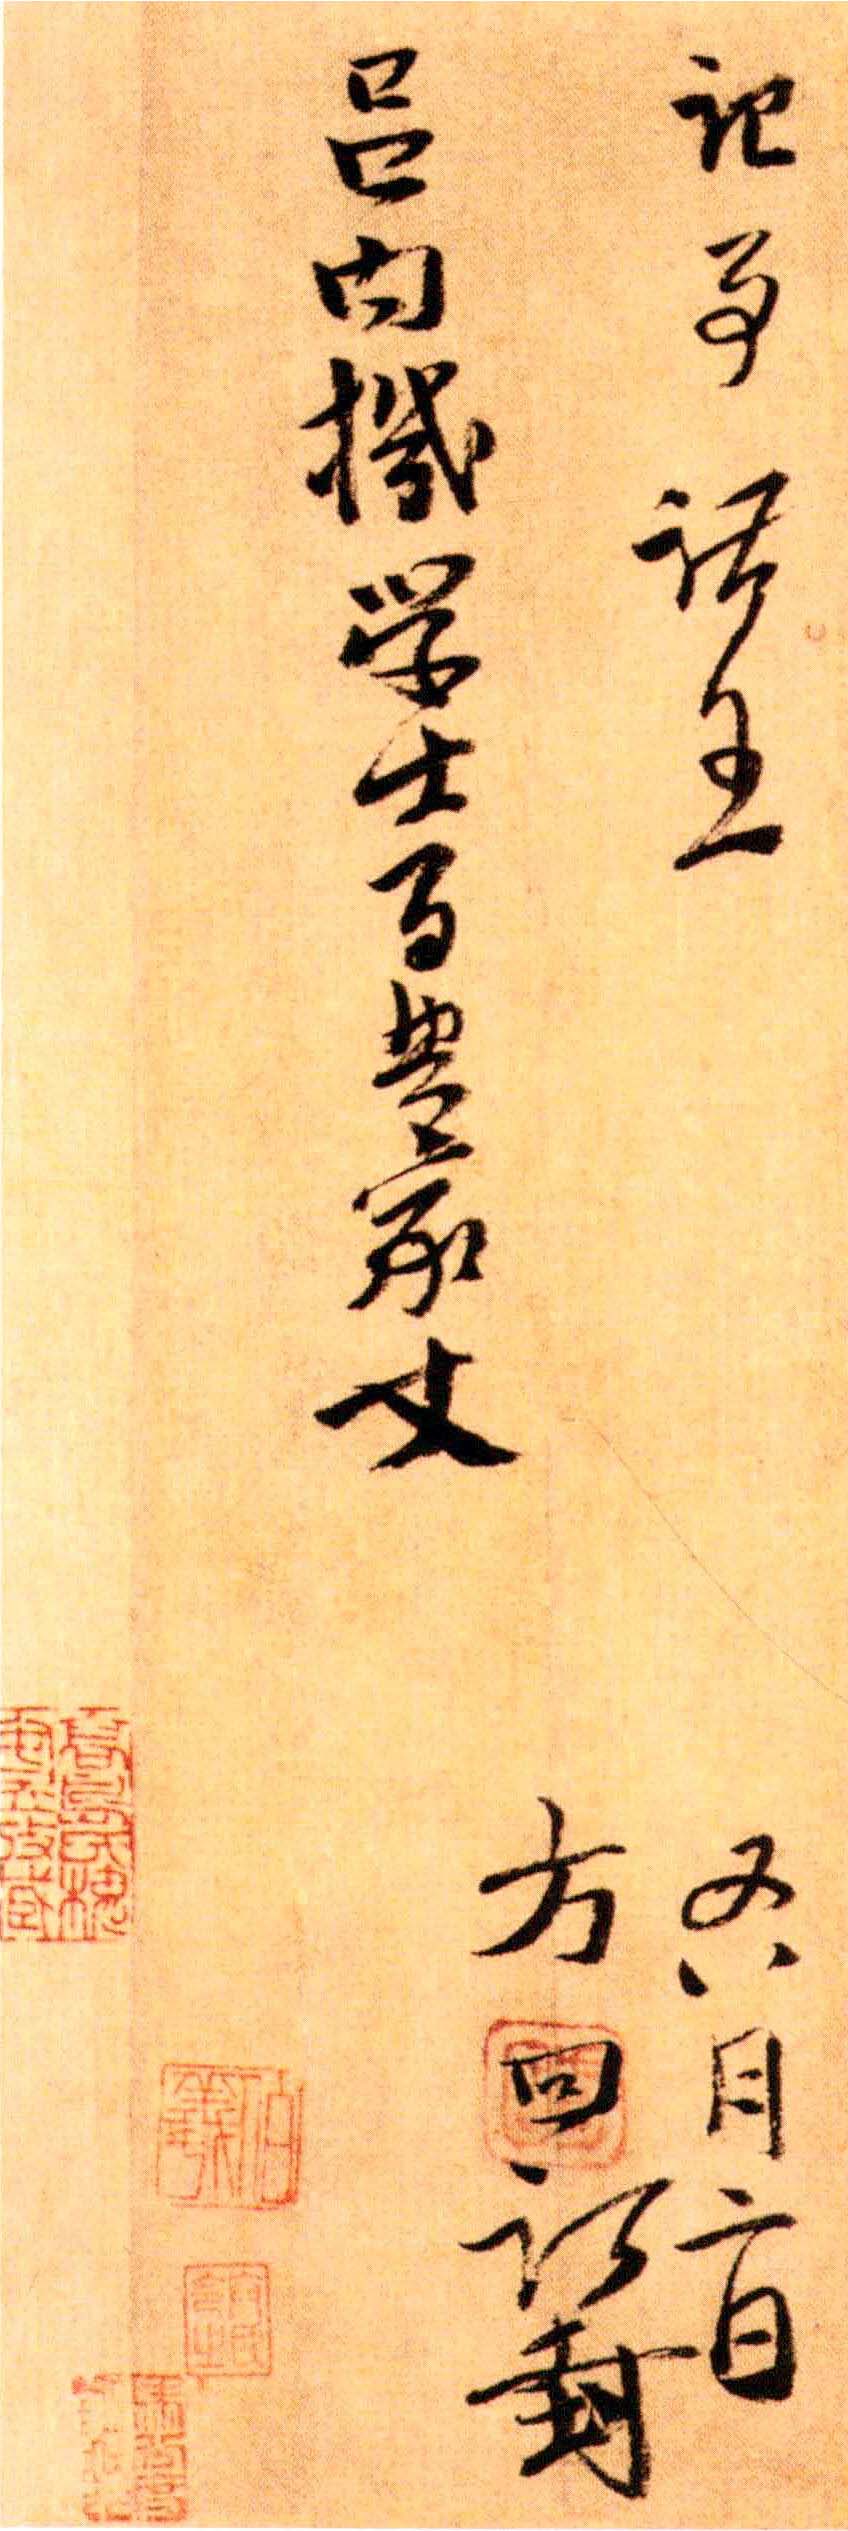 方回行书《台翰帖》-东京国立博物馆藏(图5)